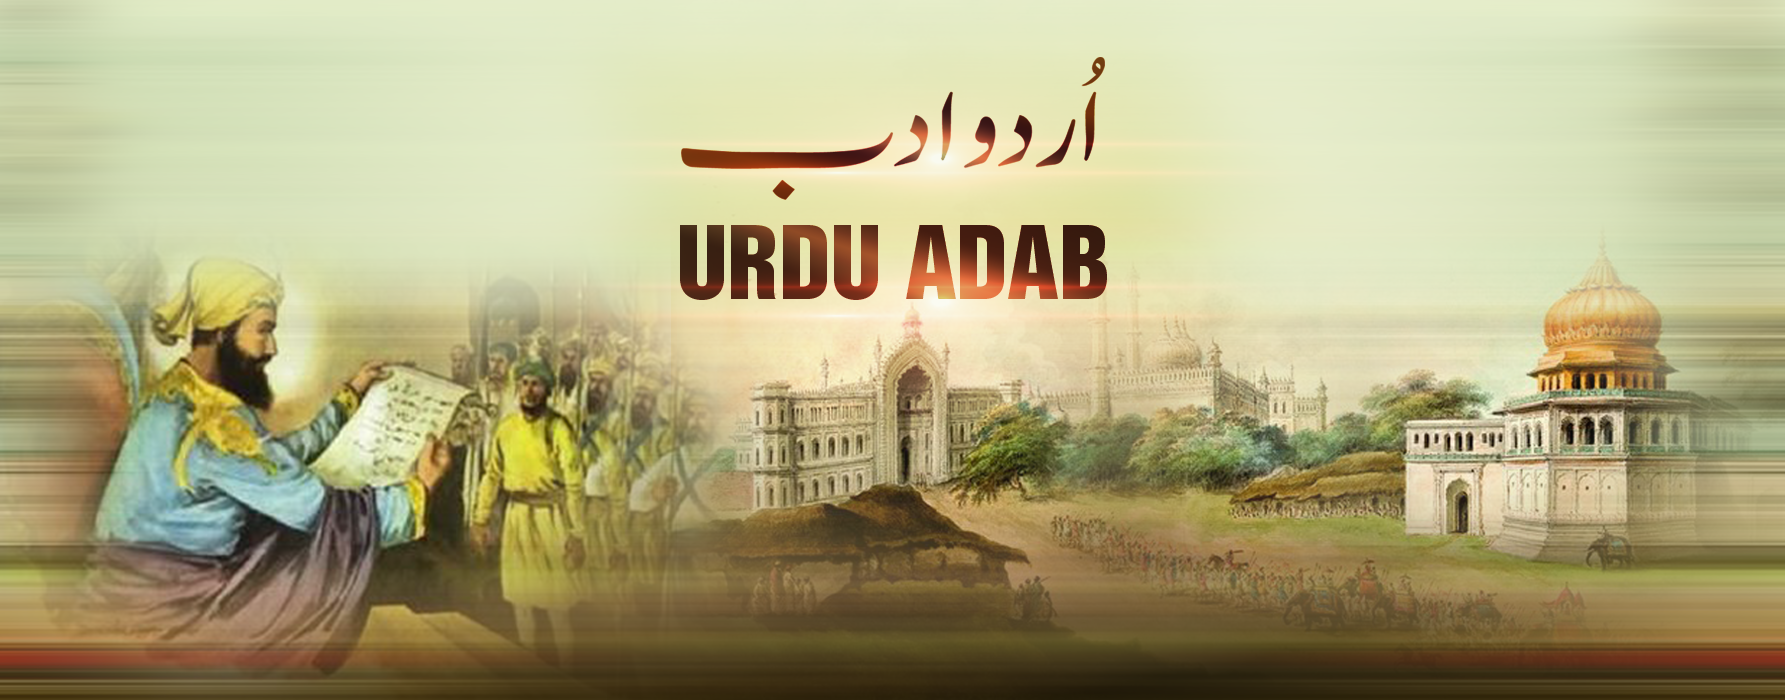 # 40 Unglian figar apni انگلیاں فگار اپنی | Urdu Adab